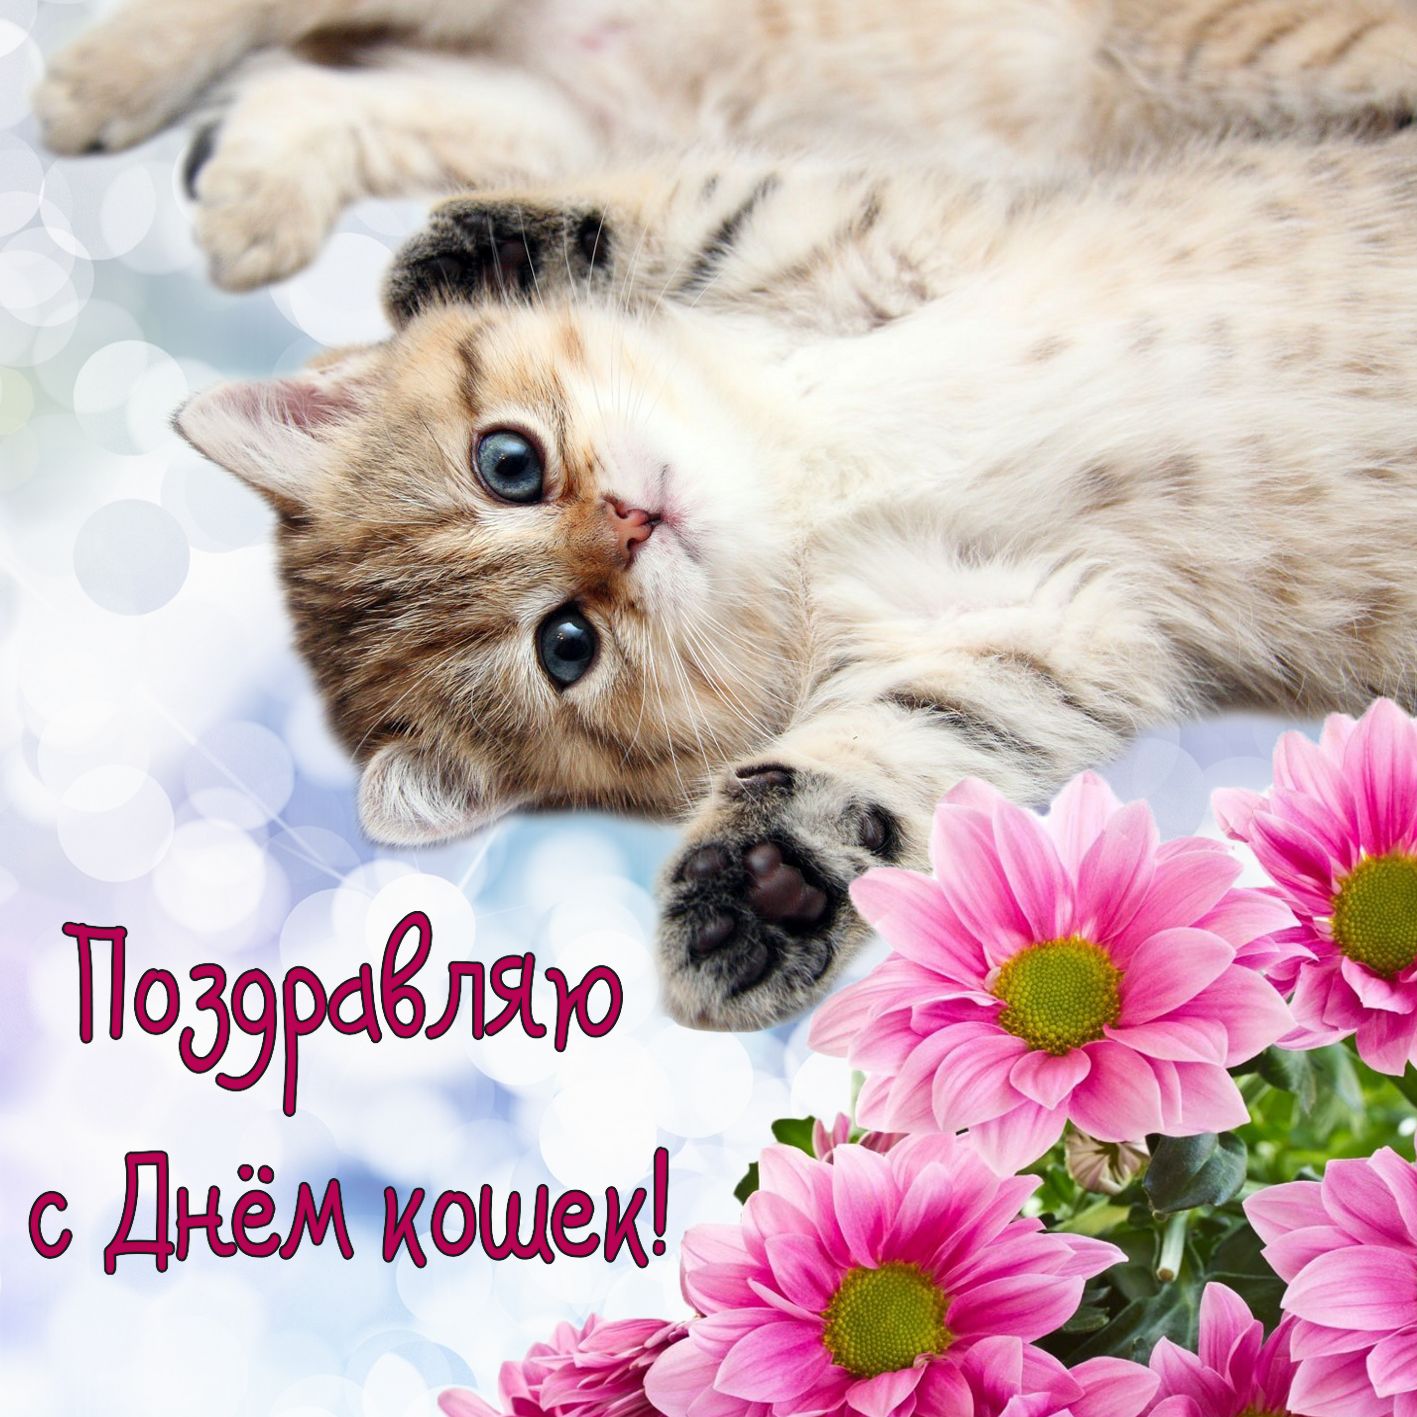 Бесплатные поздравления с днем кошек. День кошек. Всемирный день кошек 8 августа. Международный день когнк. День кошек открытки.